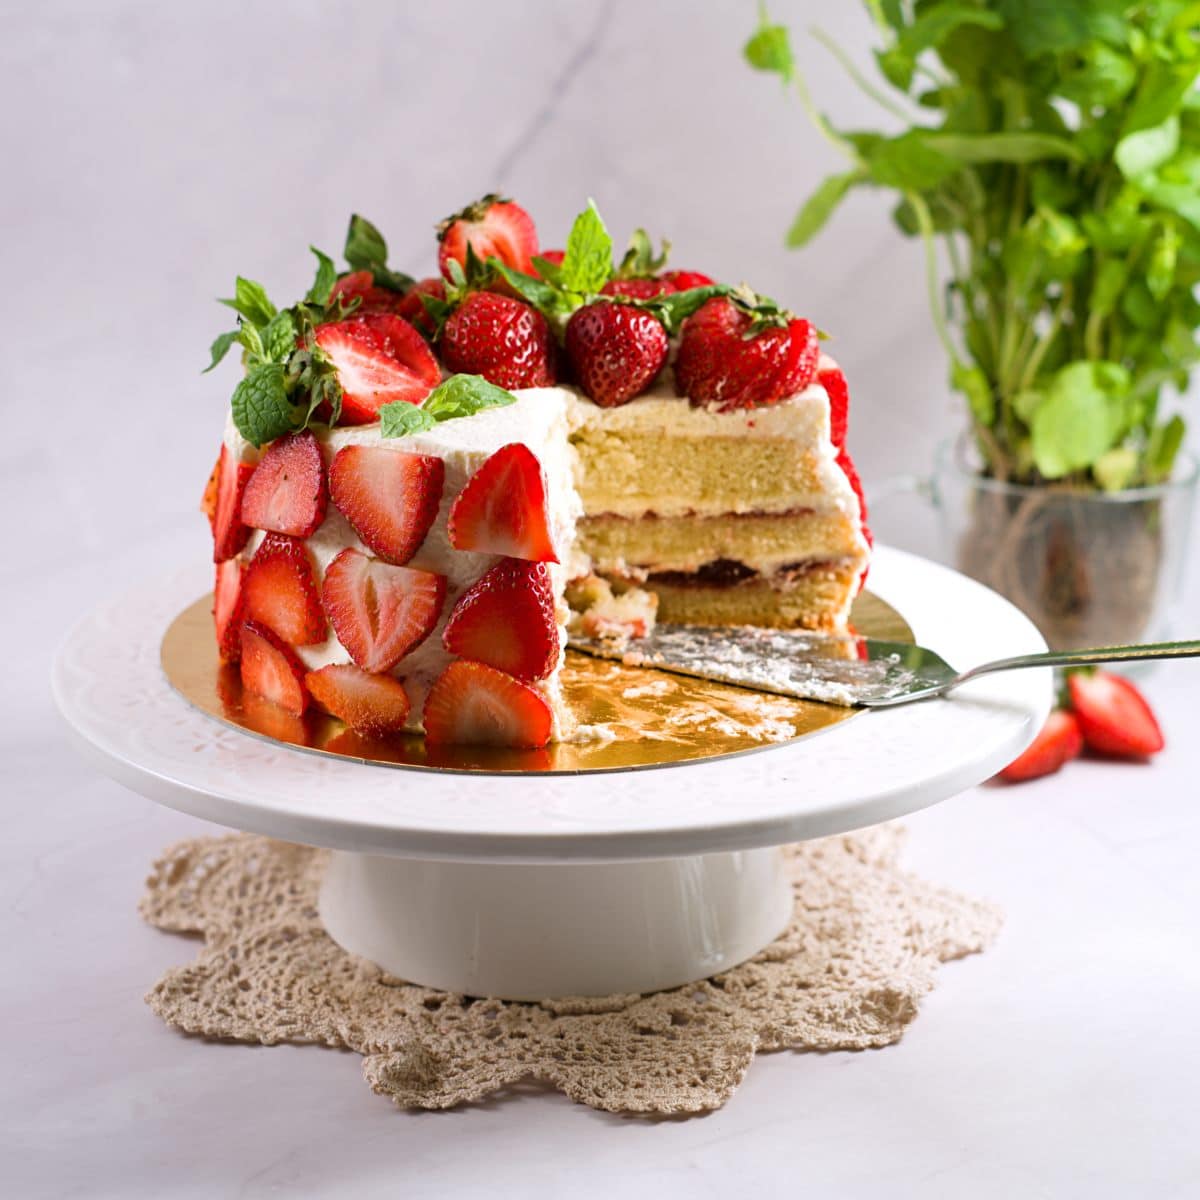 Finnish strawberry cake - Scandicuisine